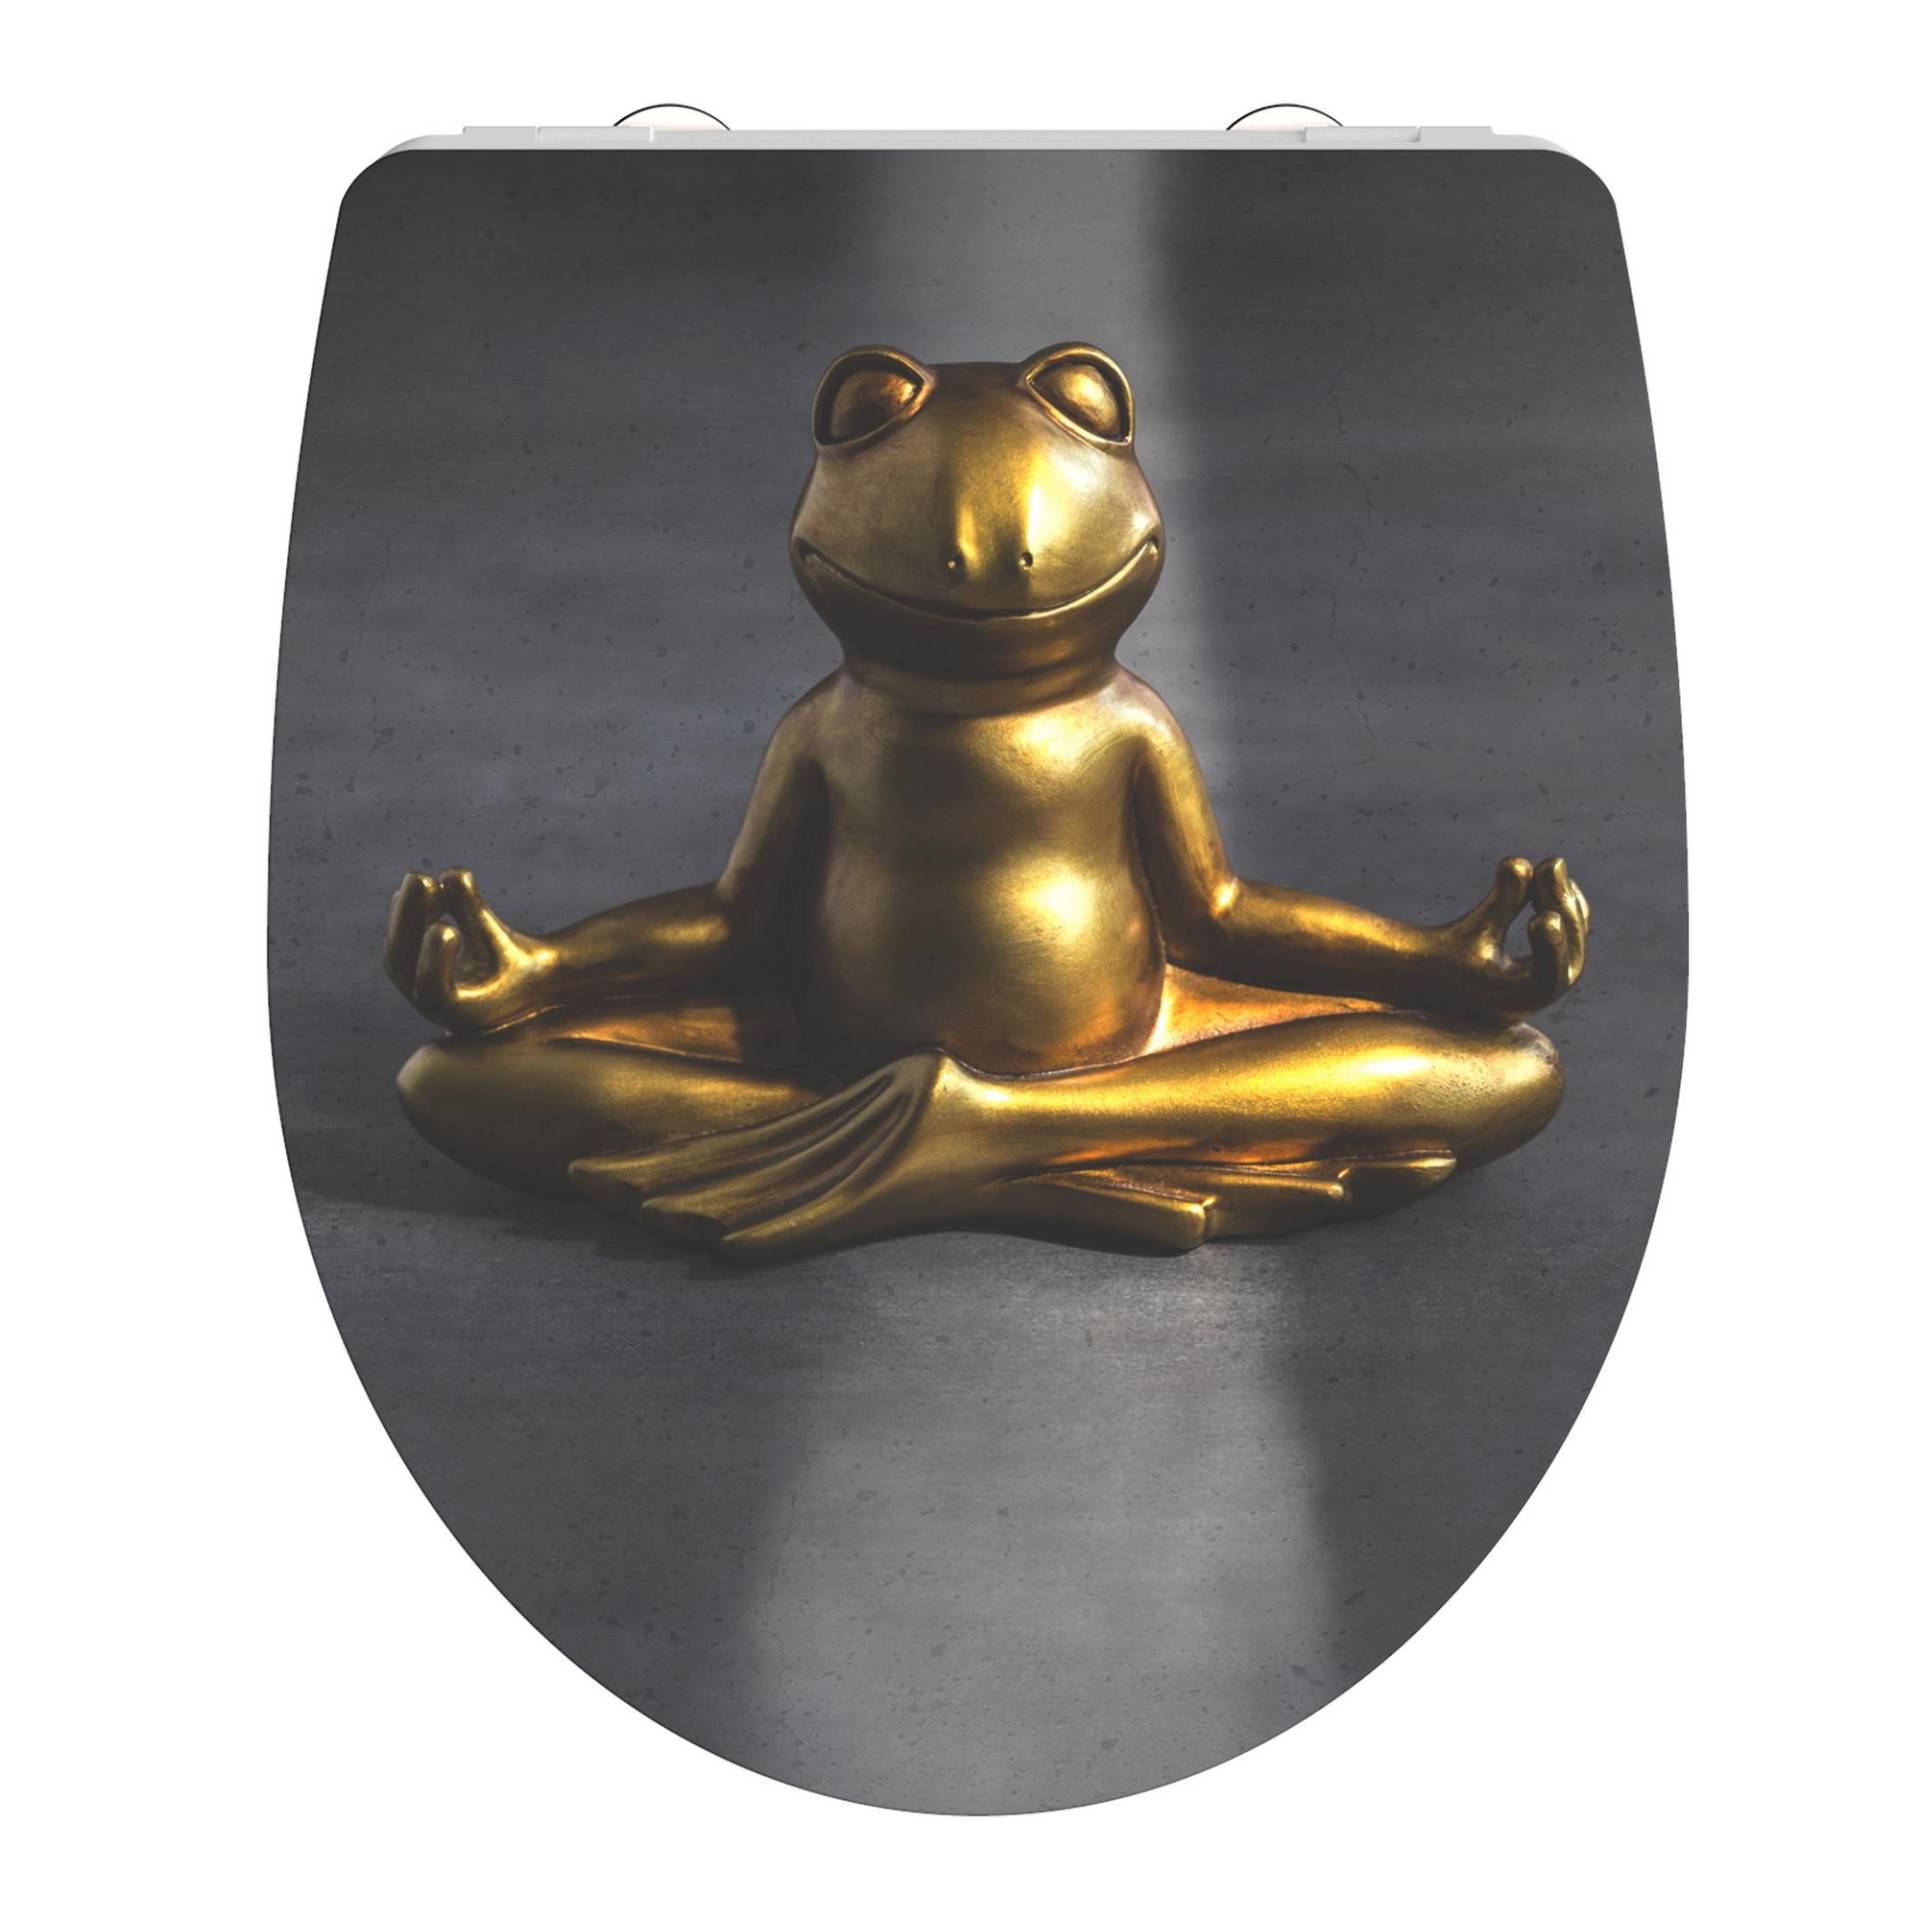 Schütte WC-Sitz 'Relaxing Frog HG' mit Absenkautomatik grau/gold 37,5 x 45 cm von Schütte